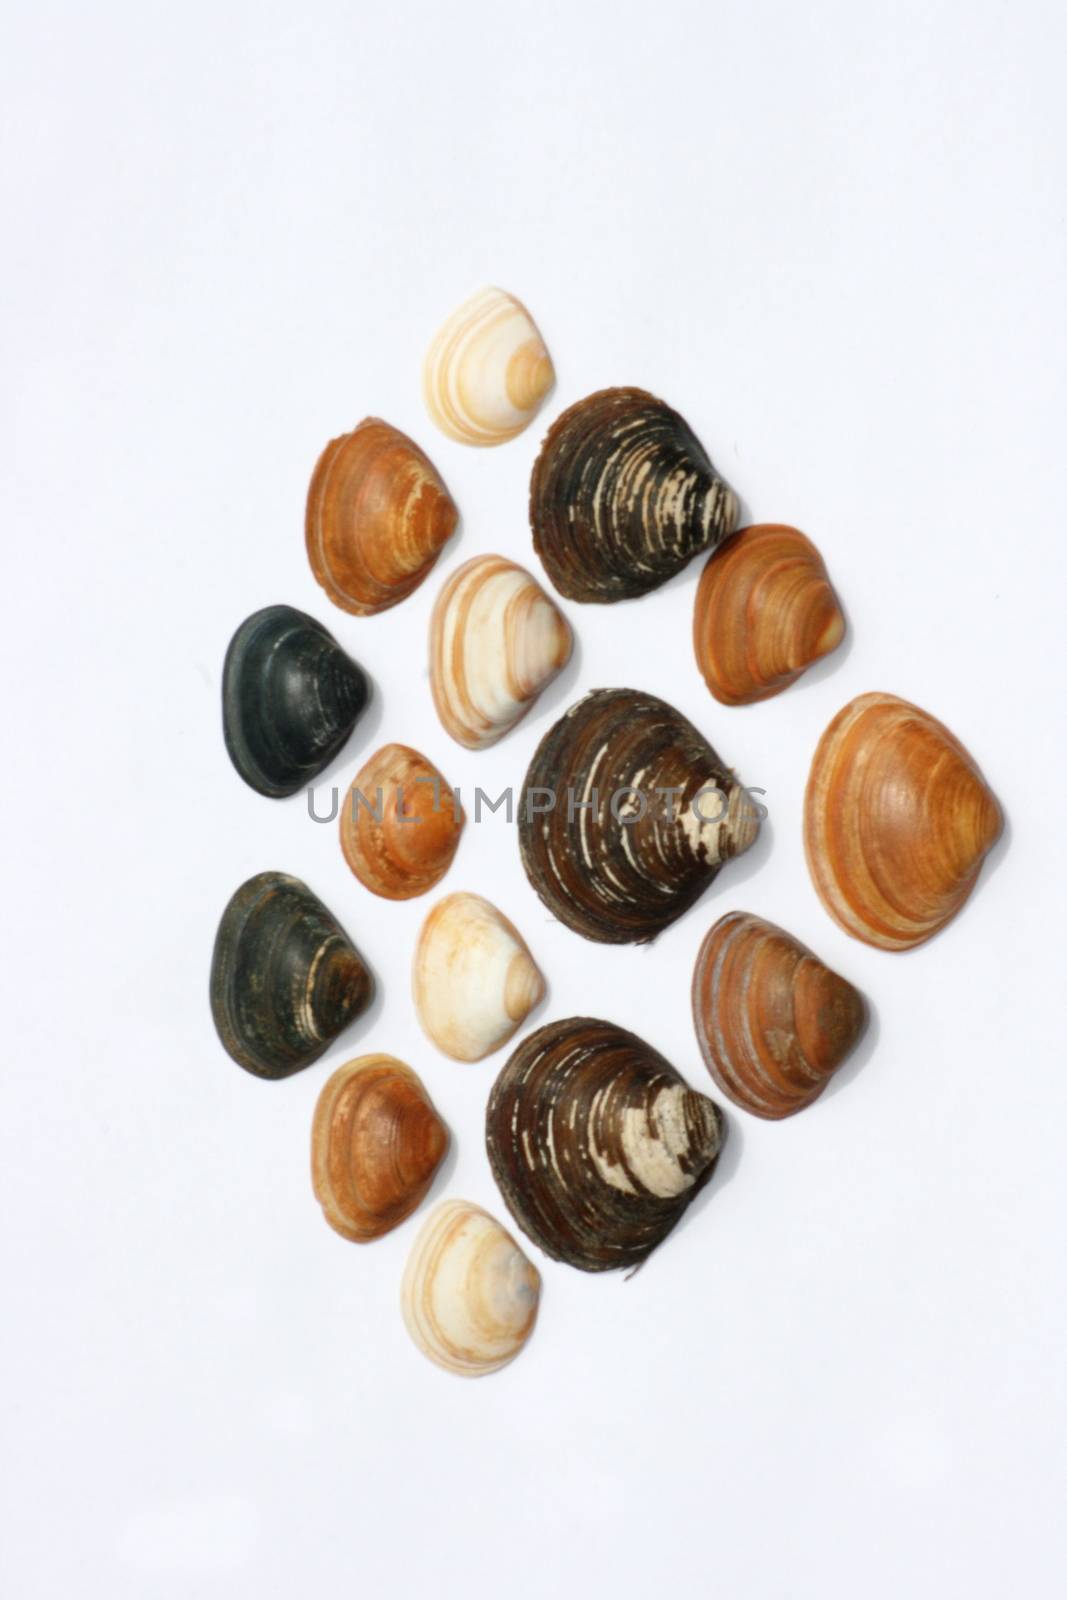 shells by hadot